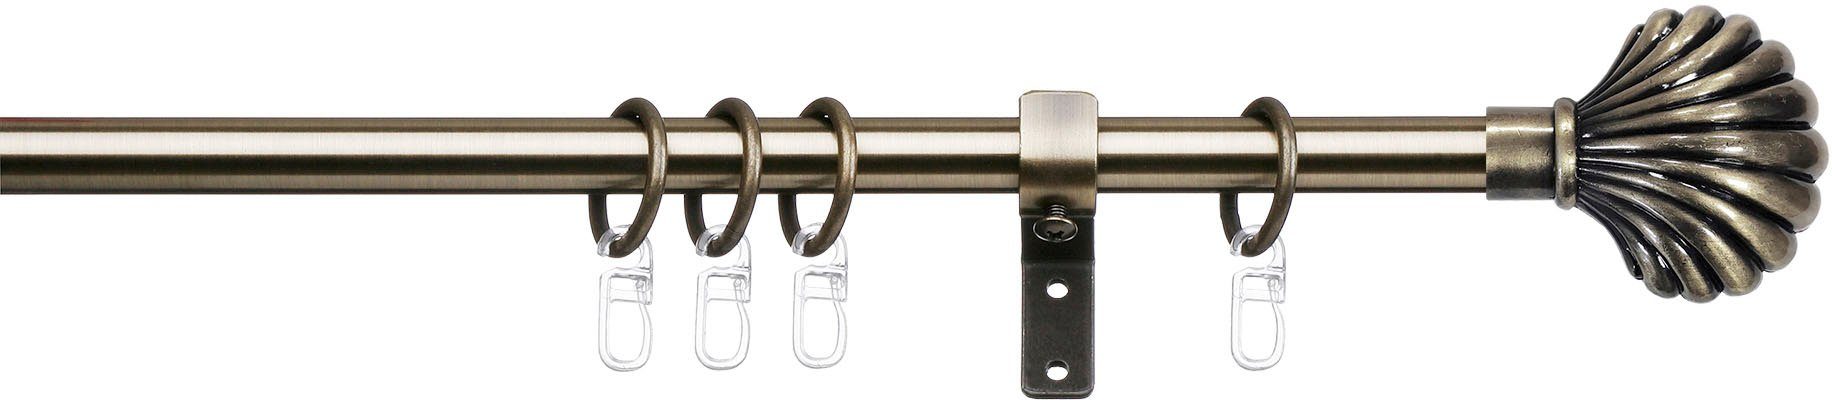 Gardinenstange Volterra, indeko, Ø 16 mm, 1-läufig, Fixmaß, verschraubt,  Stahl, Komplett-Set inkl. Ringen und Montagematerial